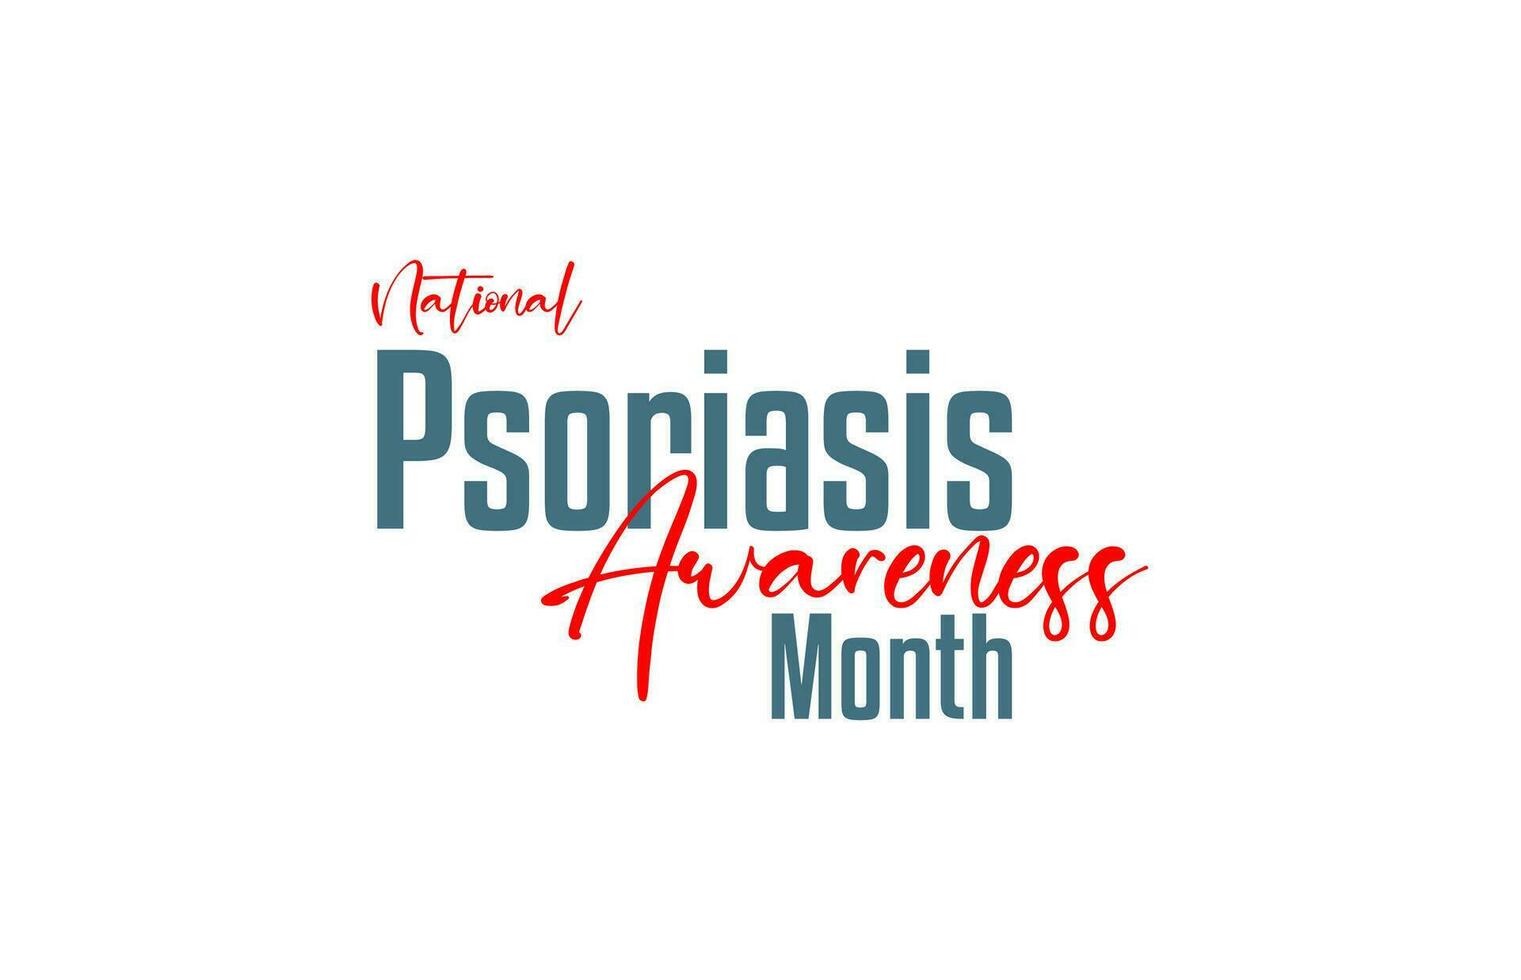 National Psoriasis Bewusstsein Monat vektor